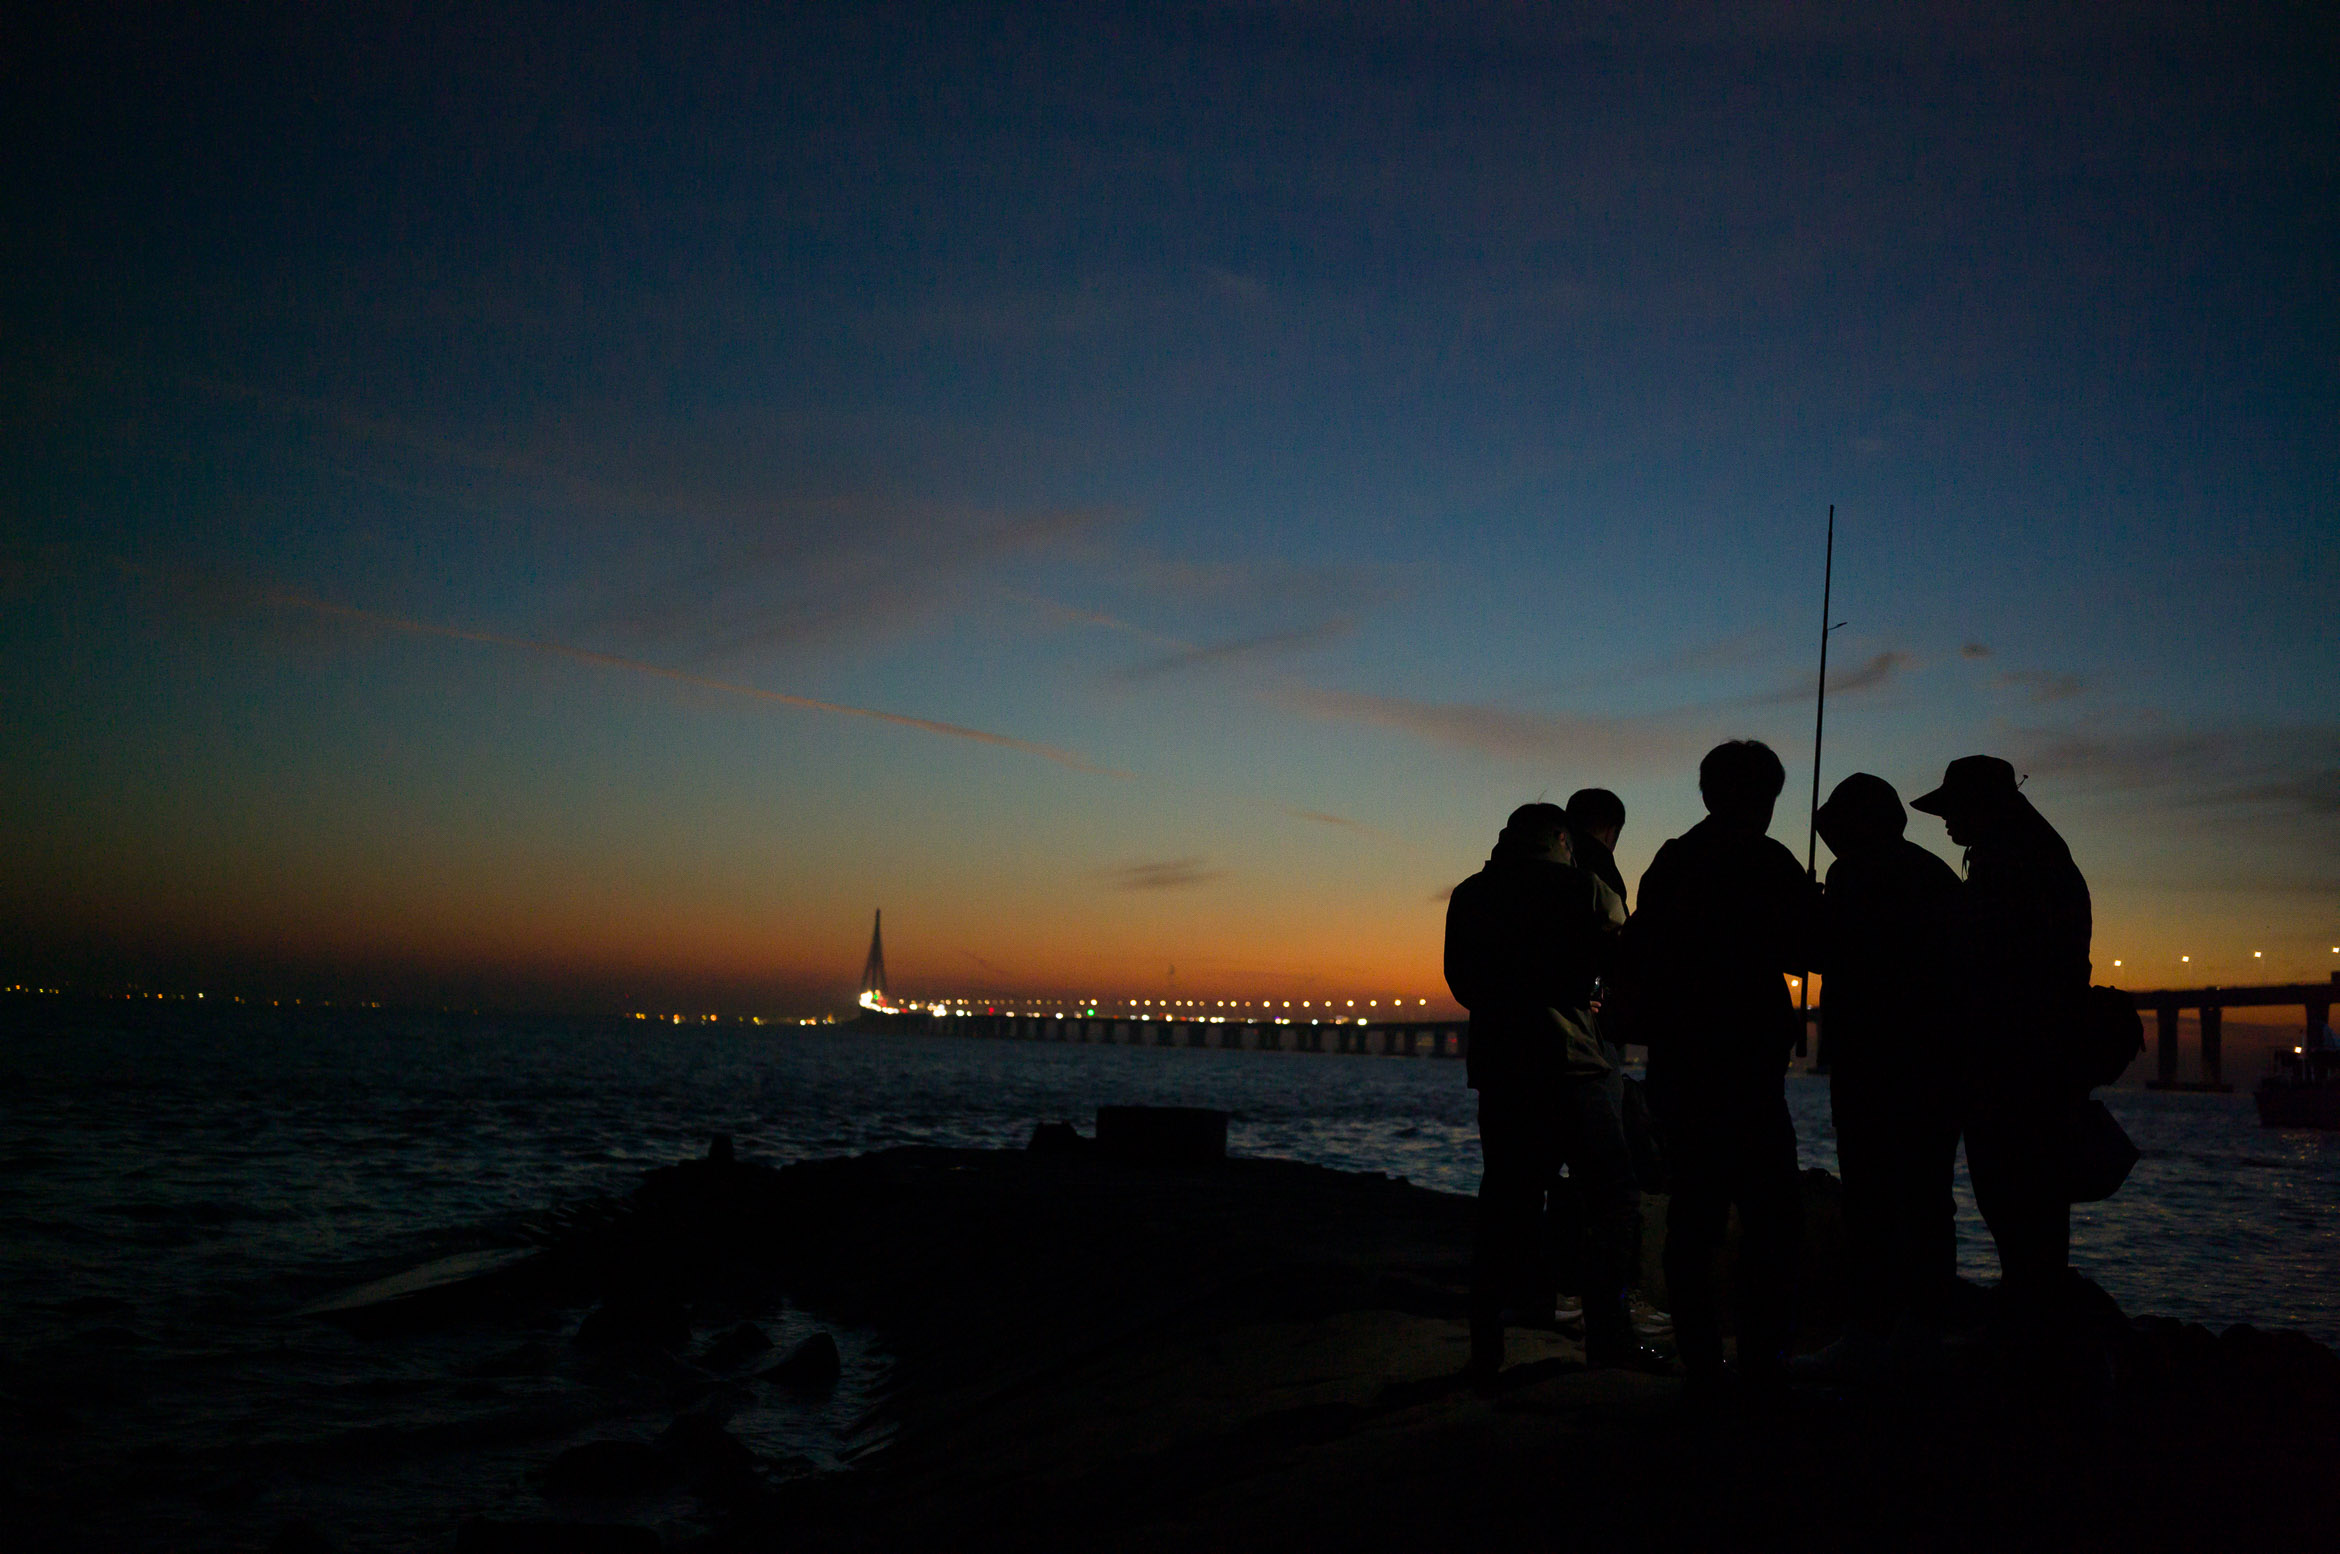 Fishermen on the bank of the Yangtze River in Shanghai 上海长江岸边的钓鱼人